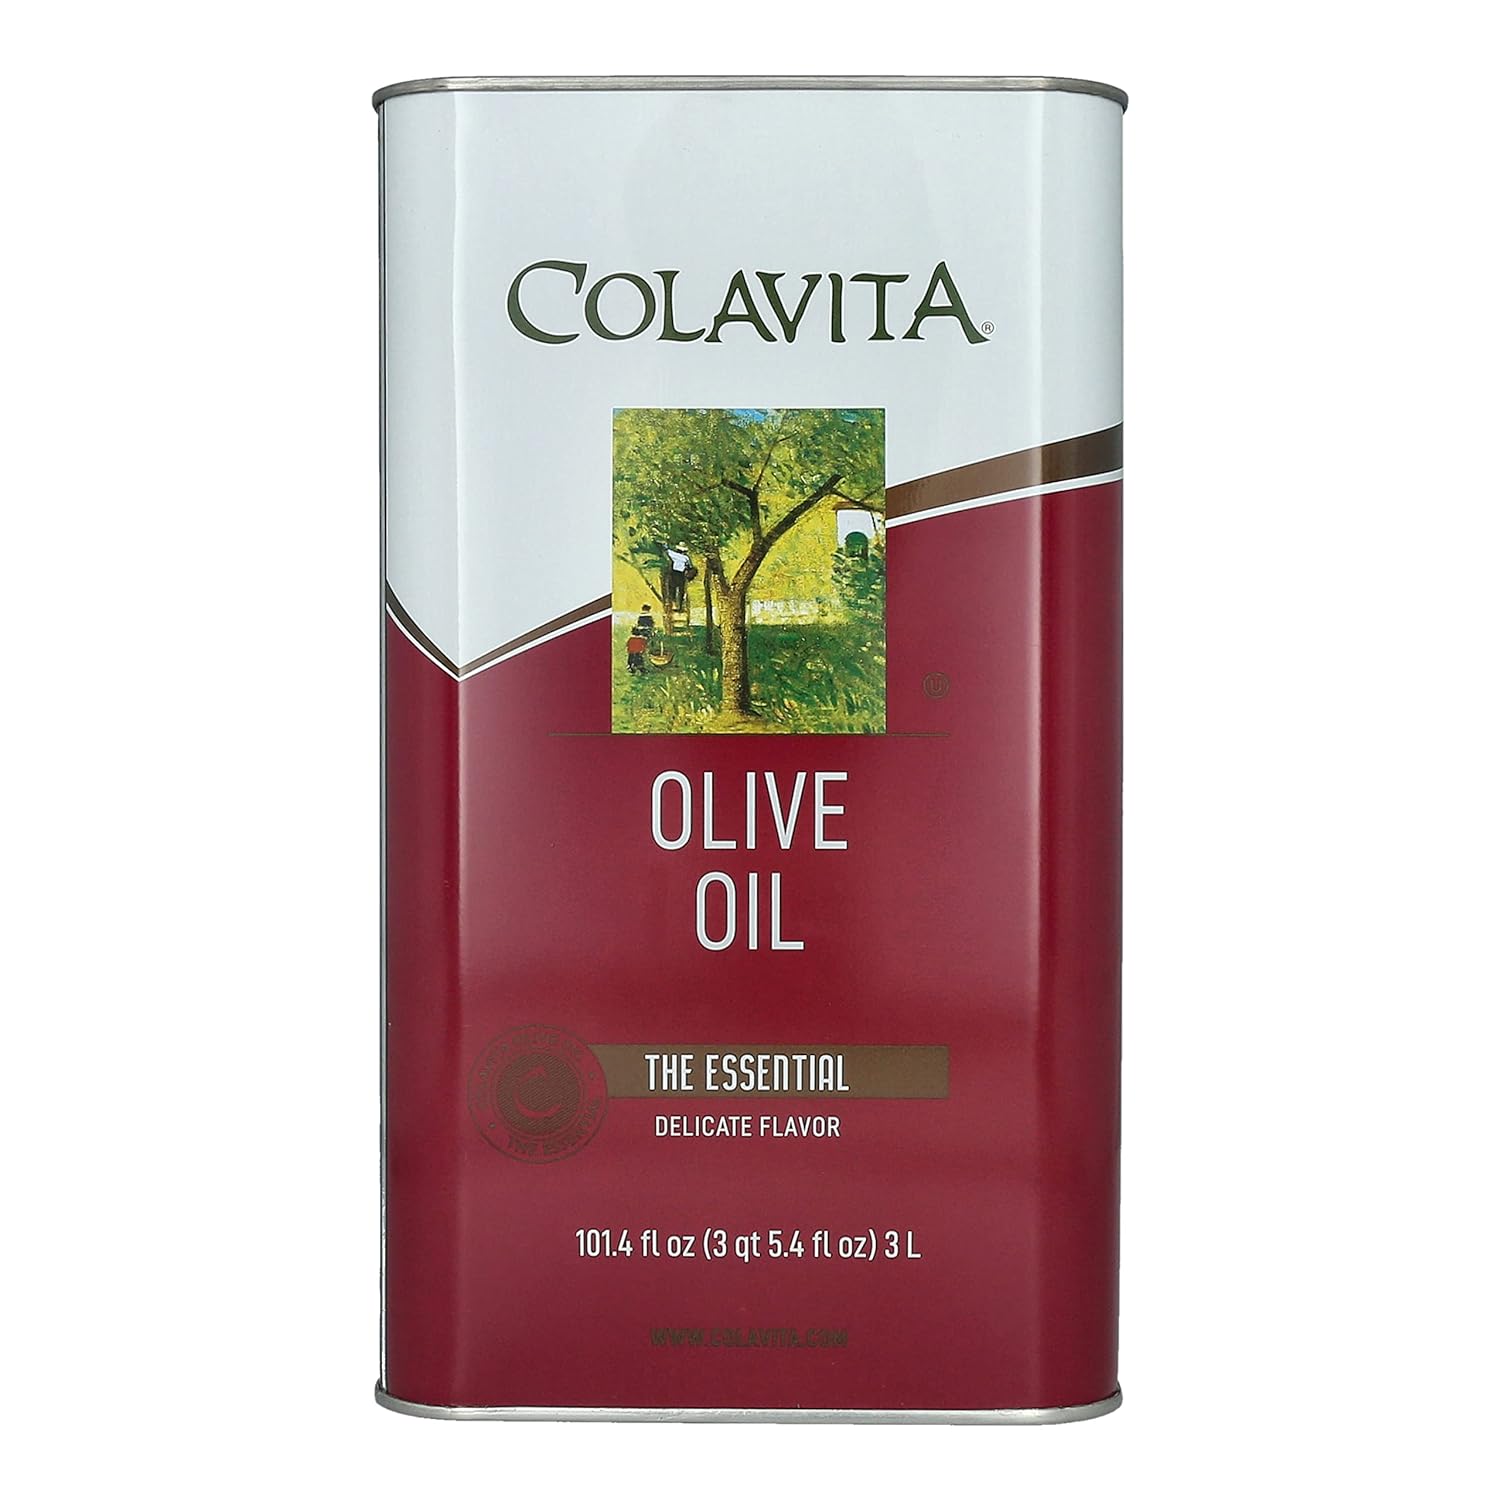 Colavita Olive Oil Olive Oil Pack of 1 Tin